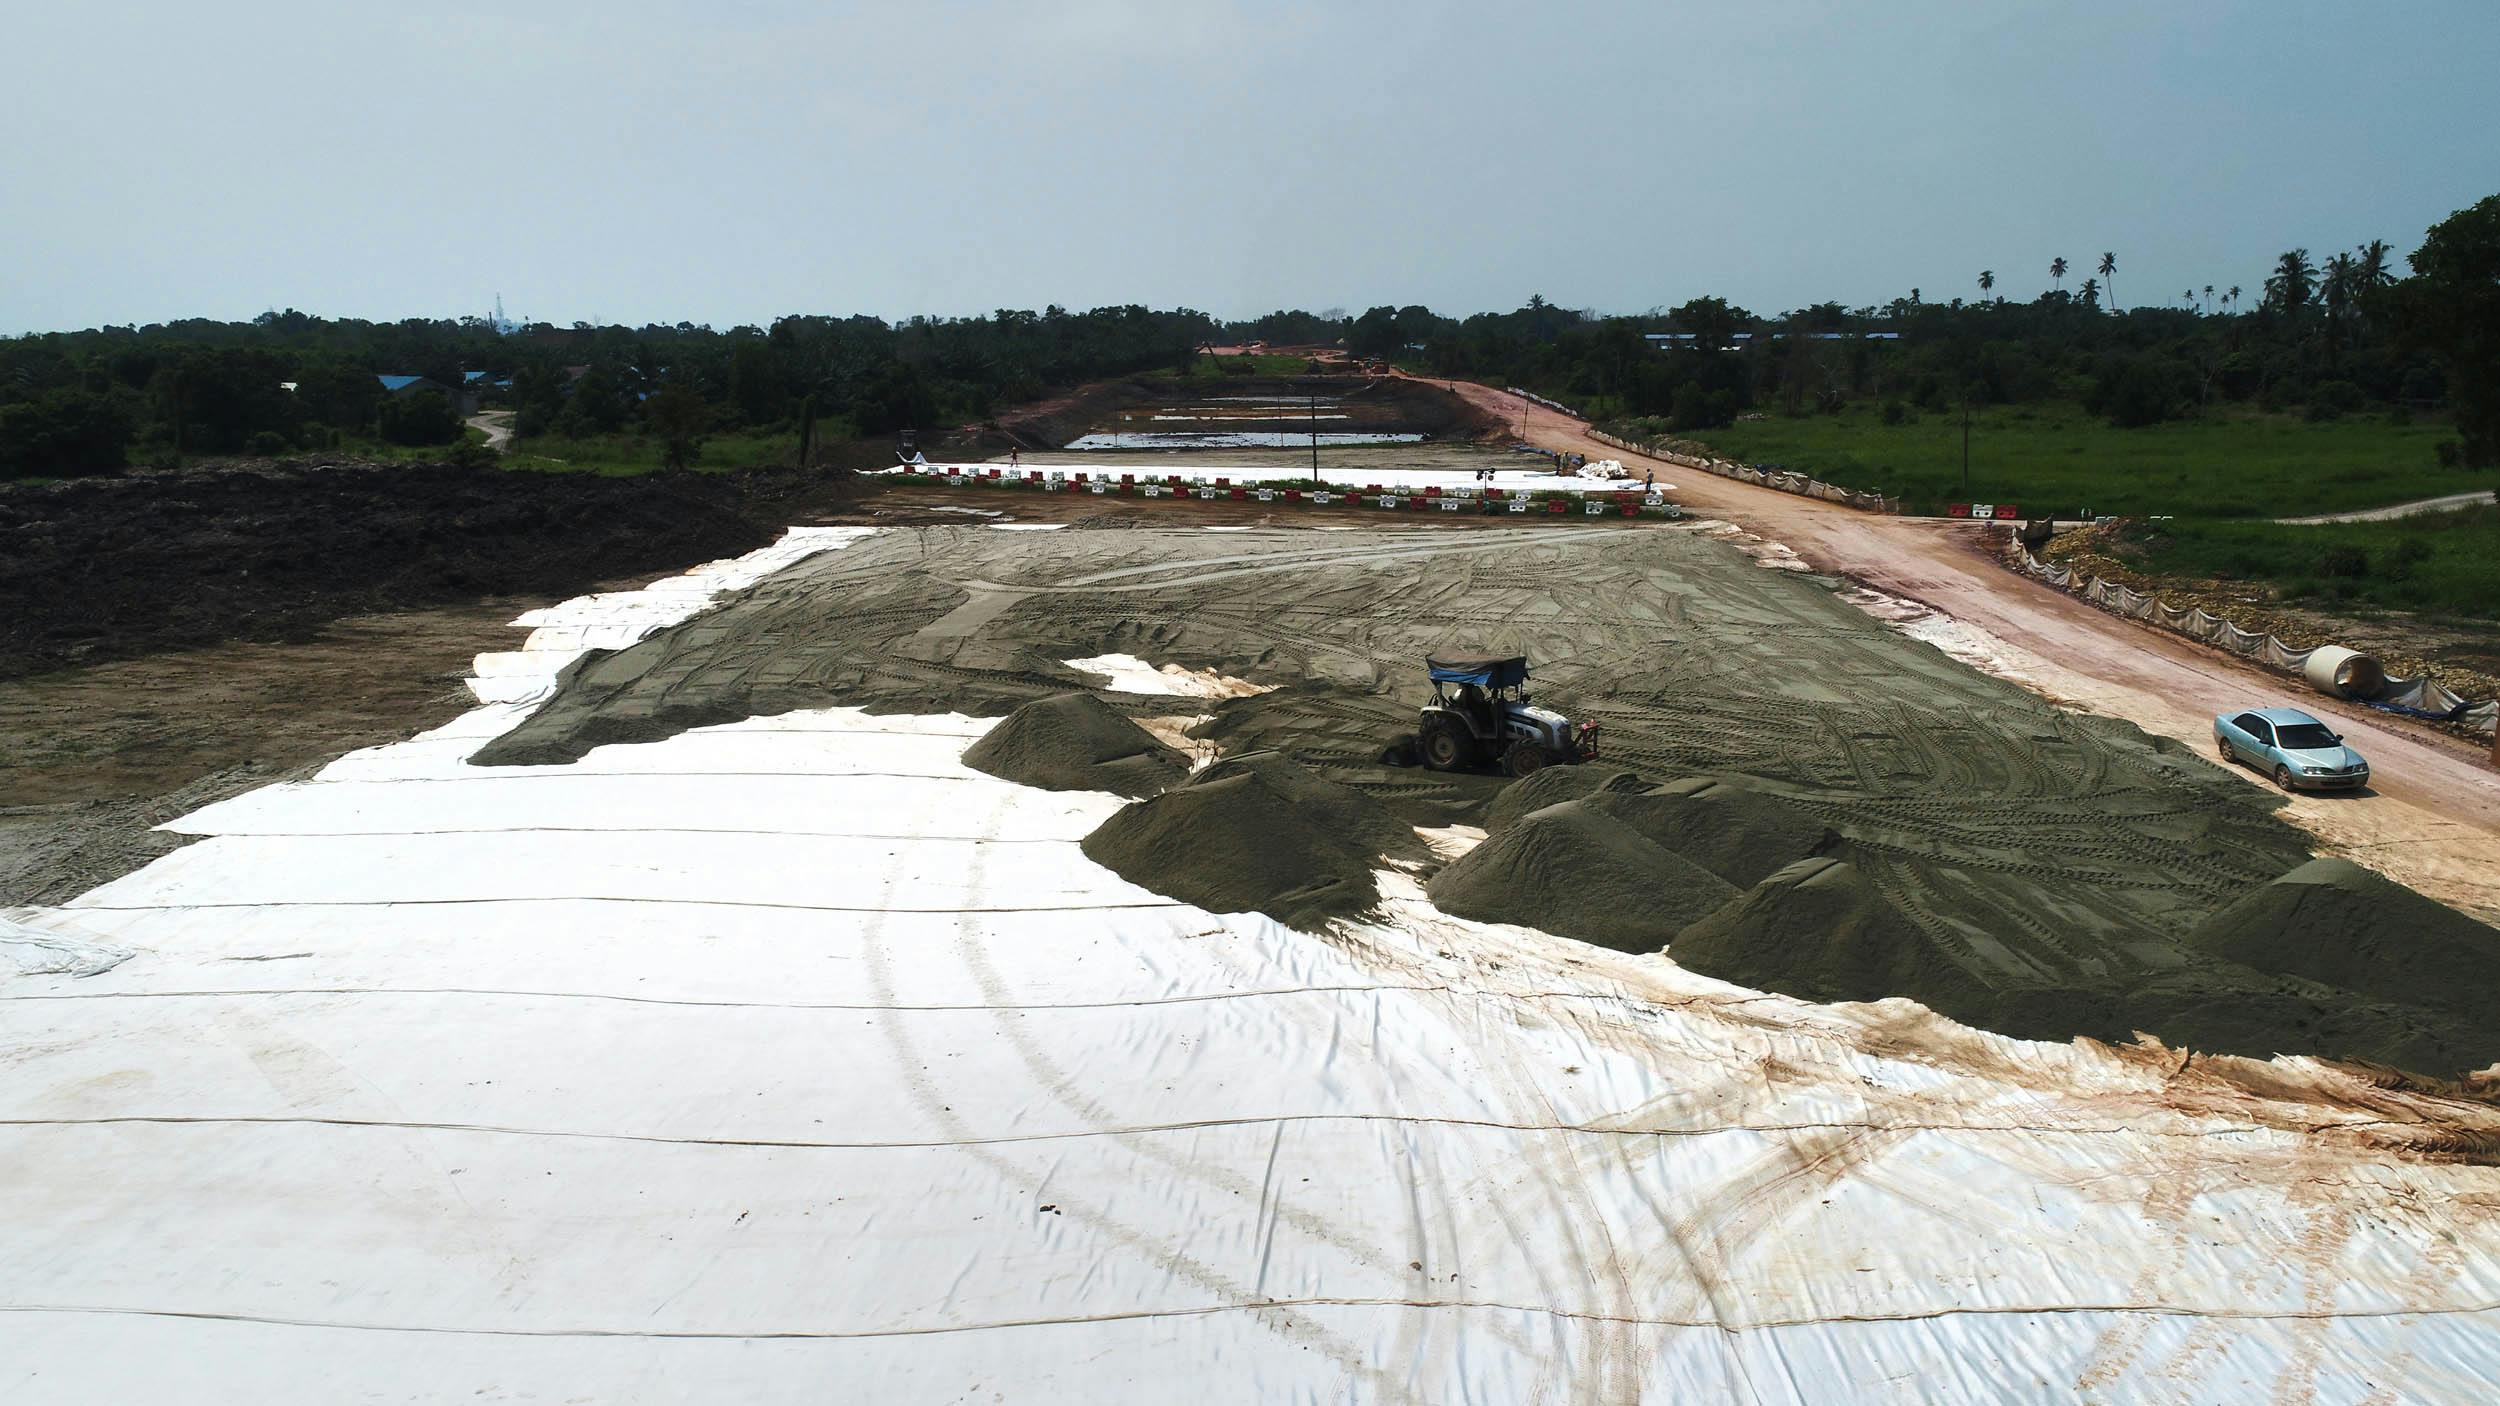 Pengerang Integrated Petroleum Complex: Basal reinforced embankment solution